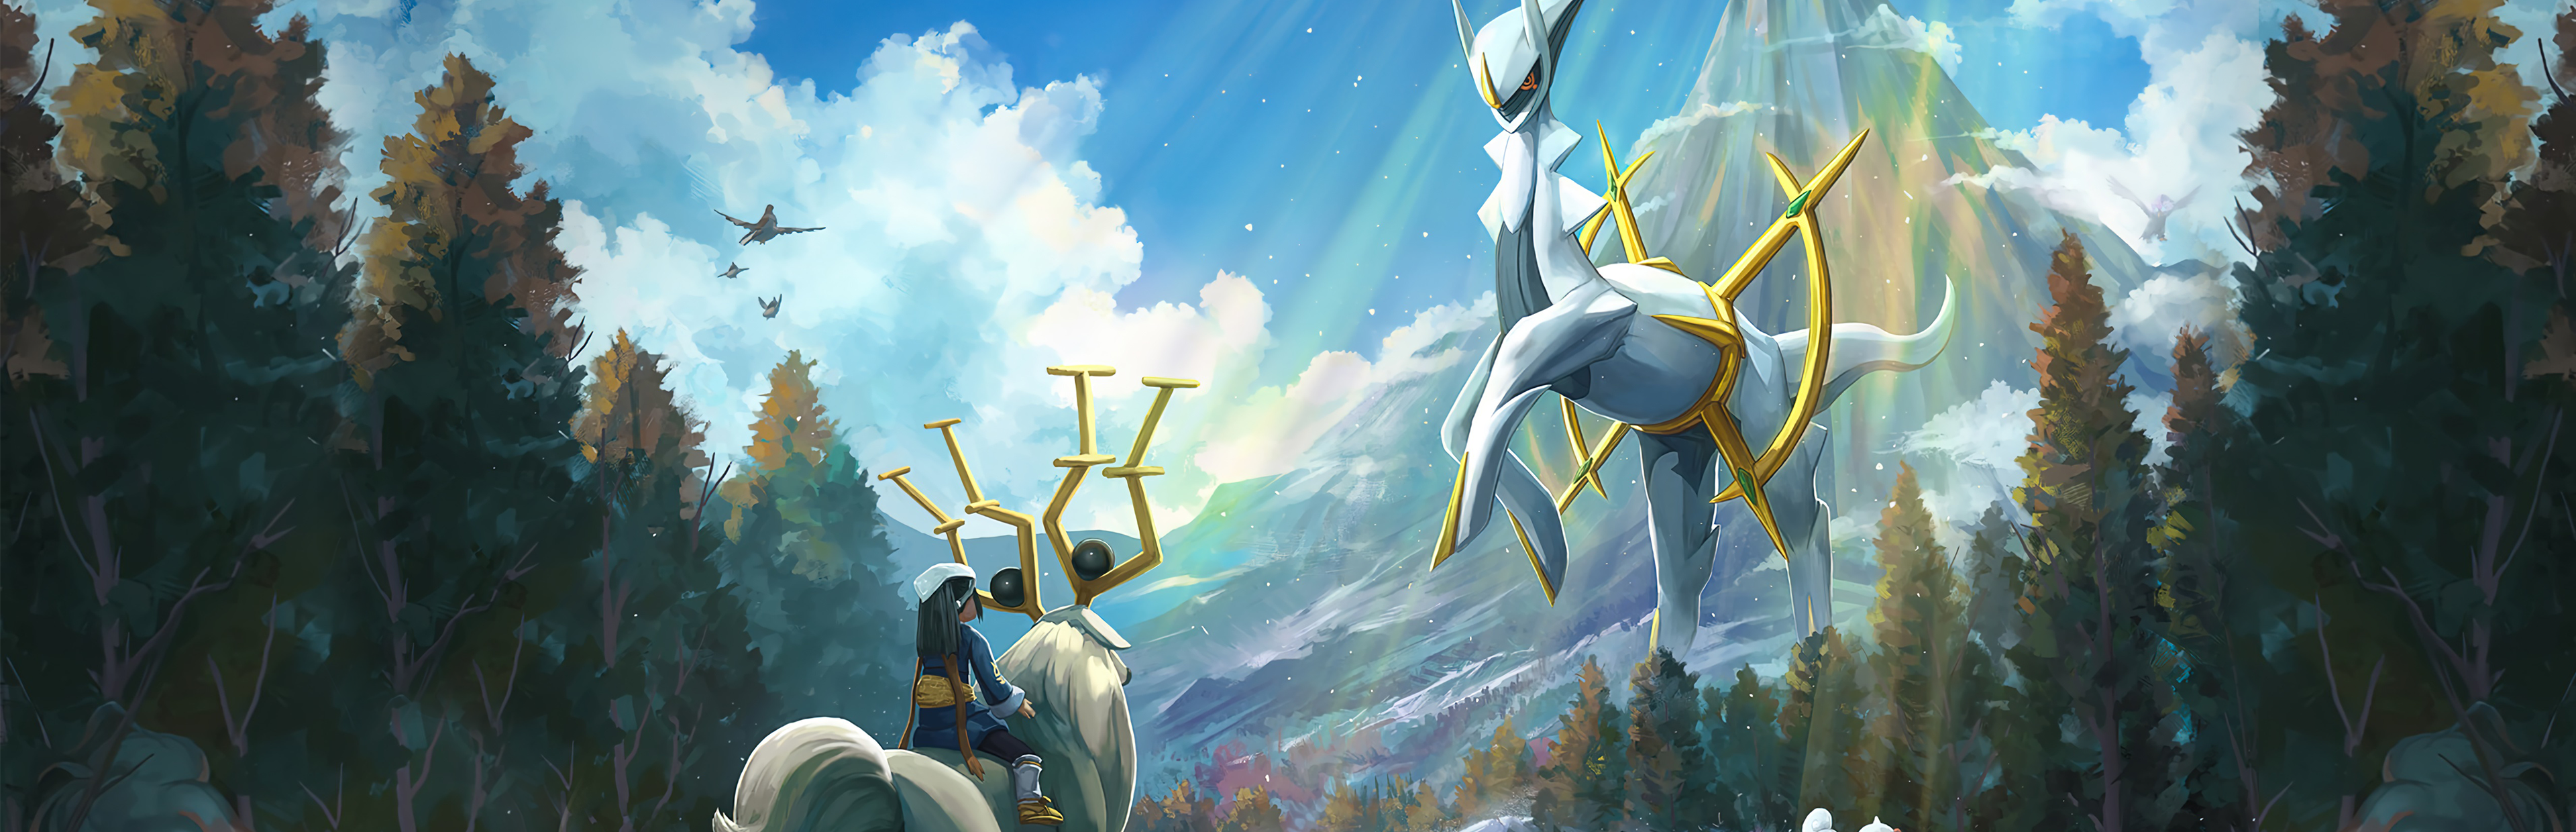 Steam Workshop::Pokémon Legends: Arceus